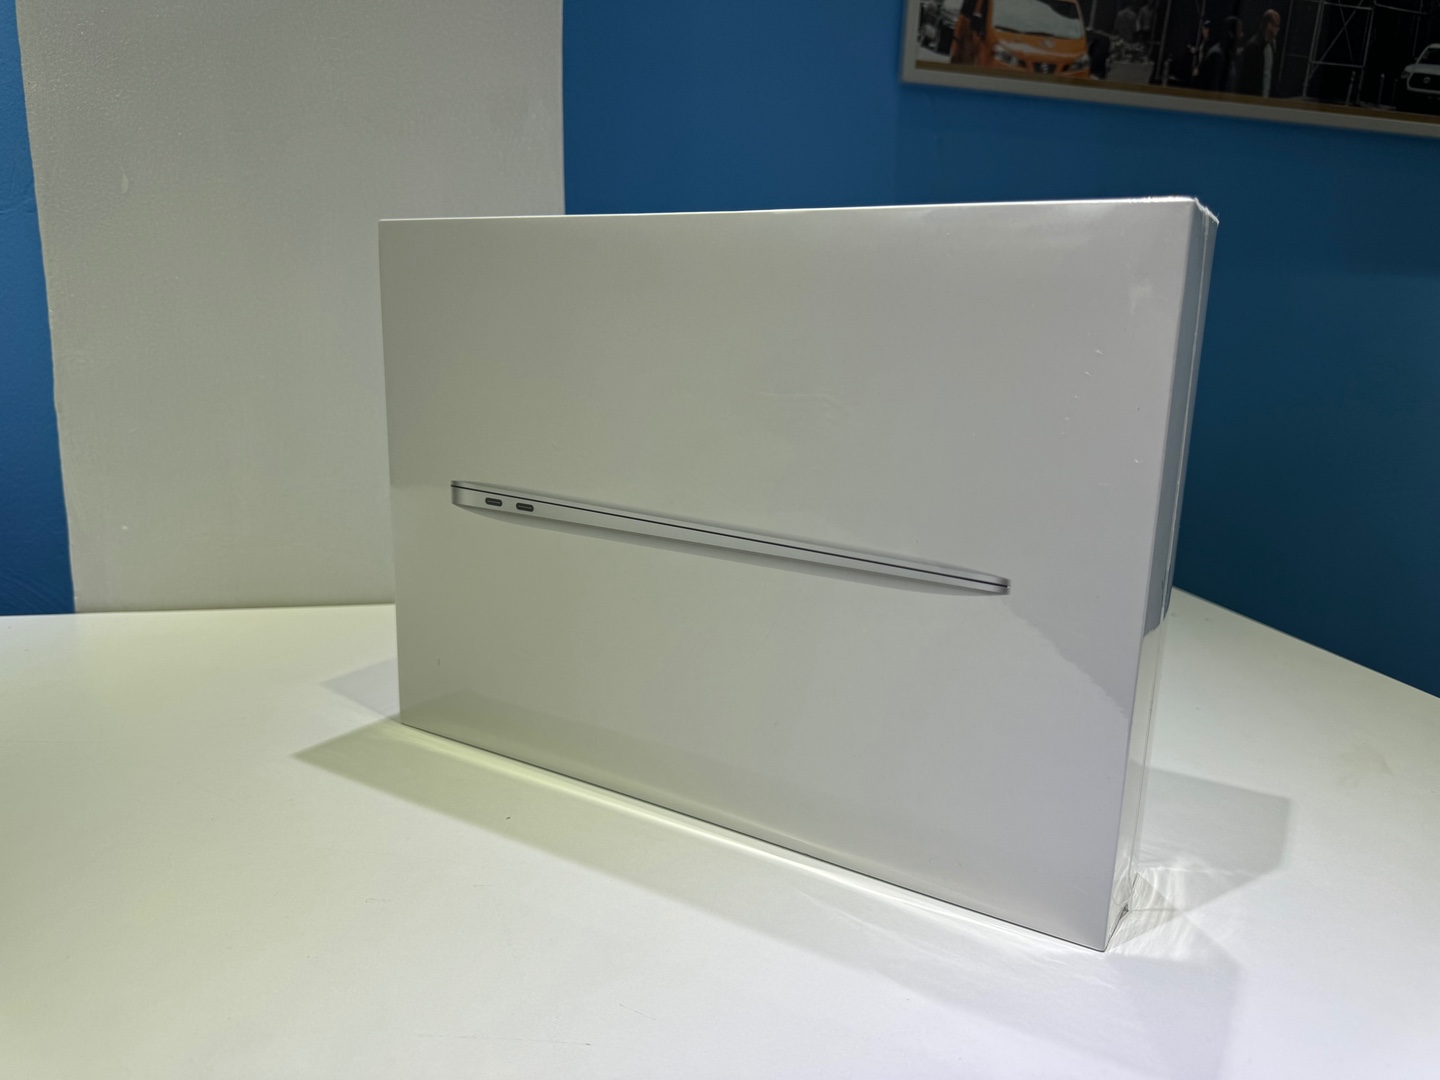 computadoras y laptops - MacBook Air M1 Apple Chip / 256GB / 8GB RAM - Nuevos Sellados RD$ 50,000 NEG